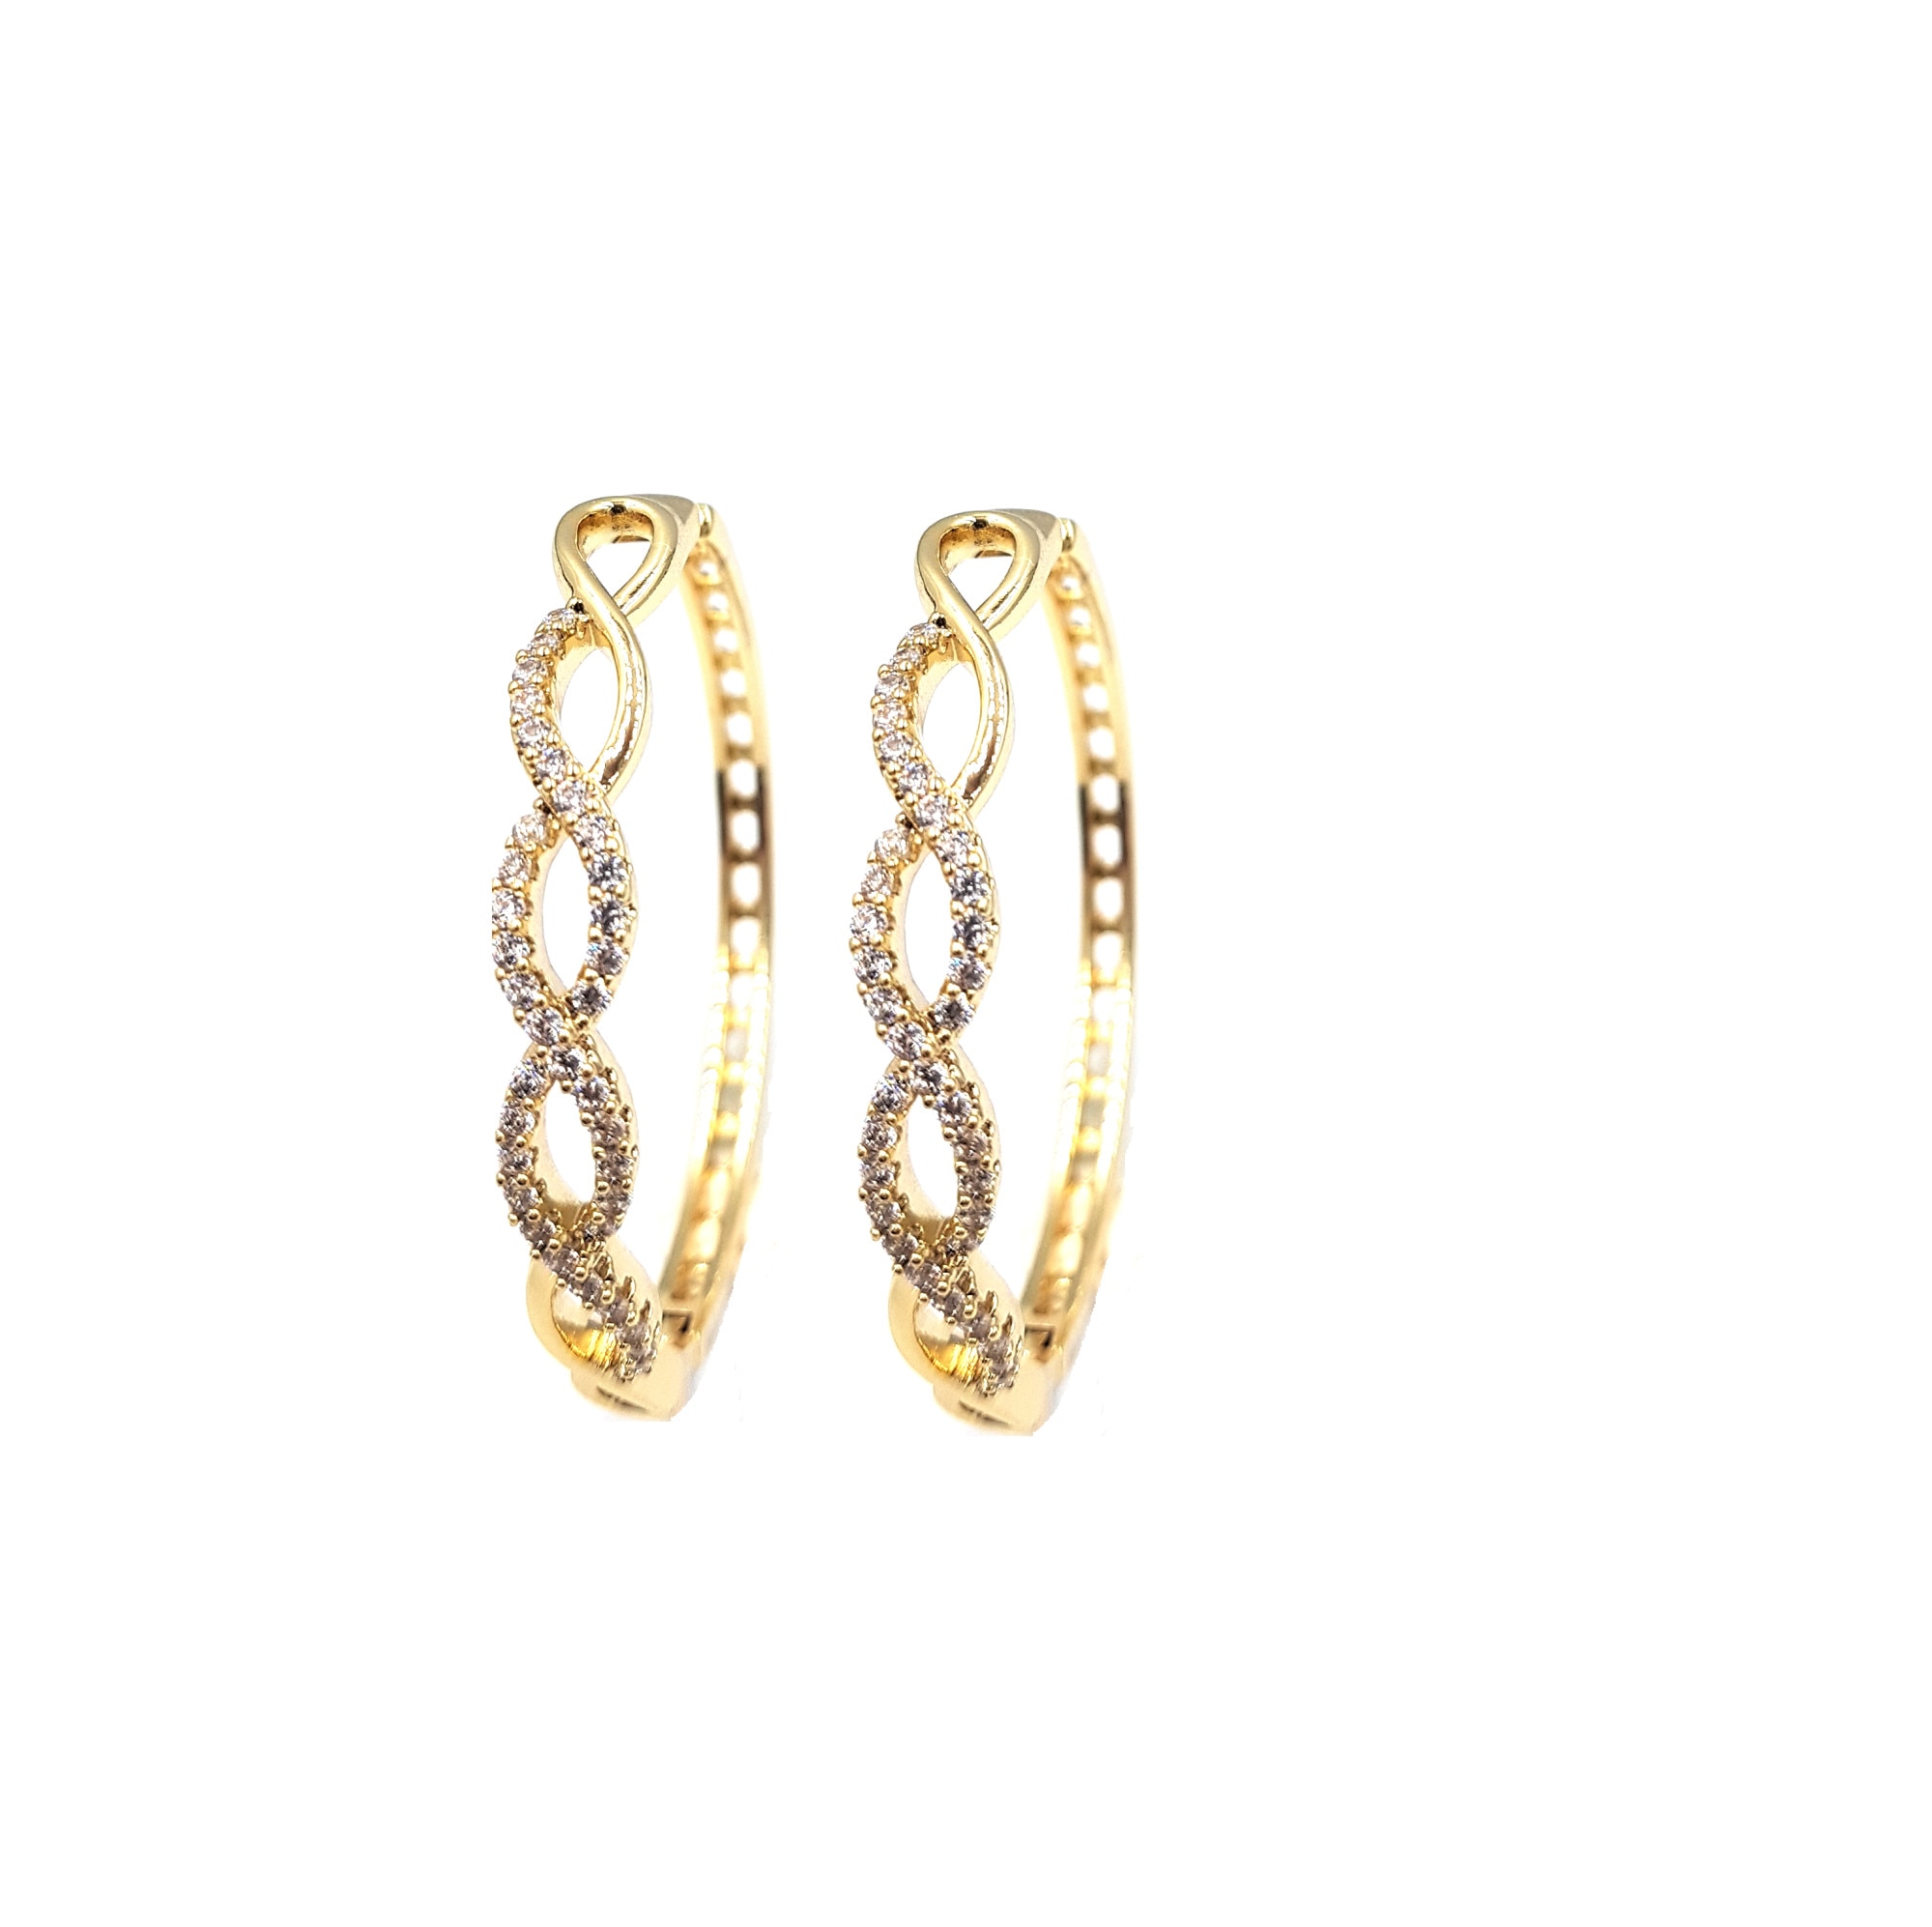 spend curl Gather Cercei rotunzi mari placati cu aur, pietre zirconiu, diametru 4.6 cm, model  Tamara - eMAG.ro